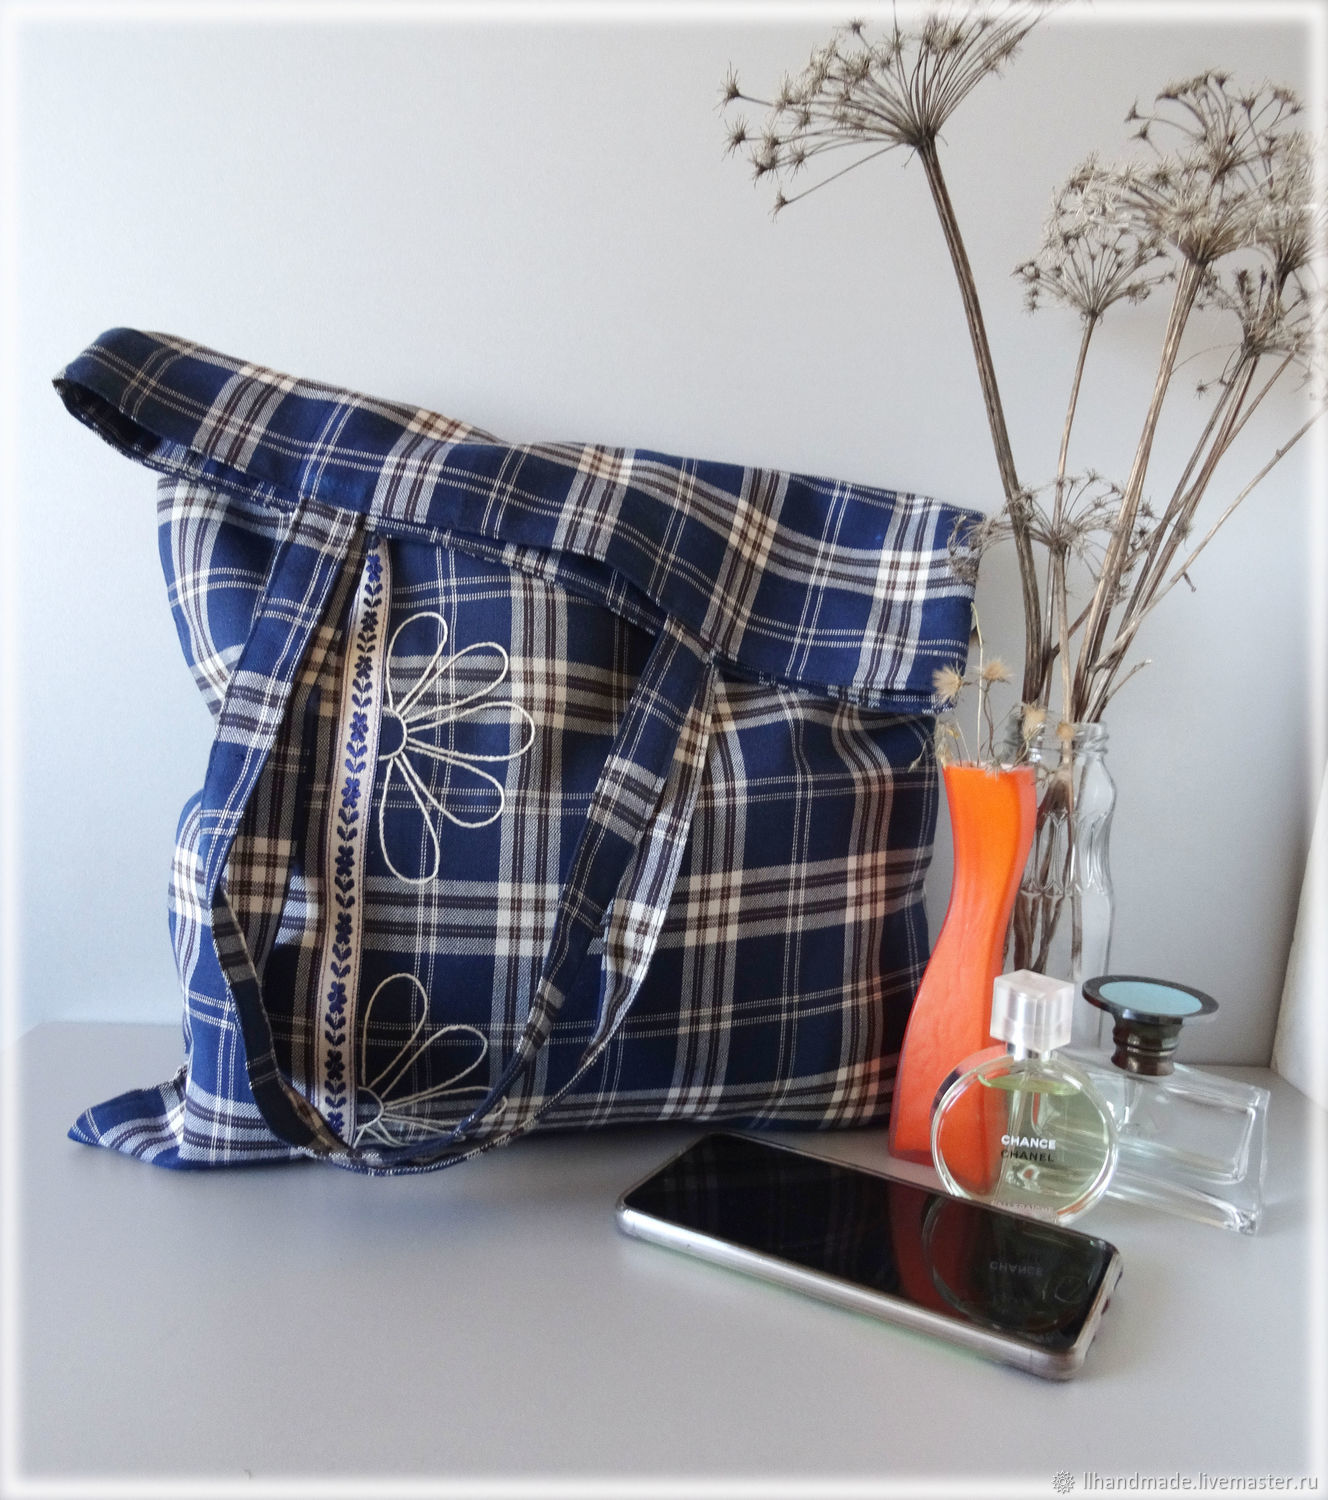 Эко-сумка "Синее лето" - ручная вышивка, авоська, хлопковая сумка